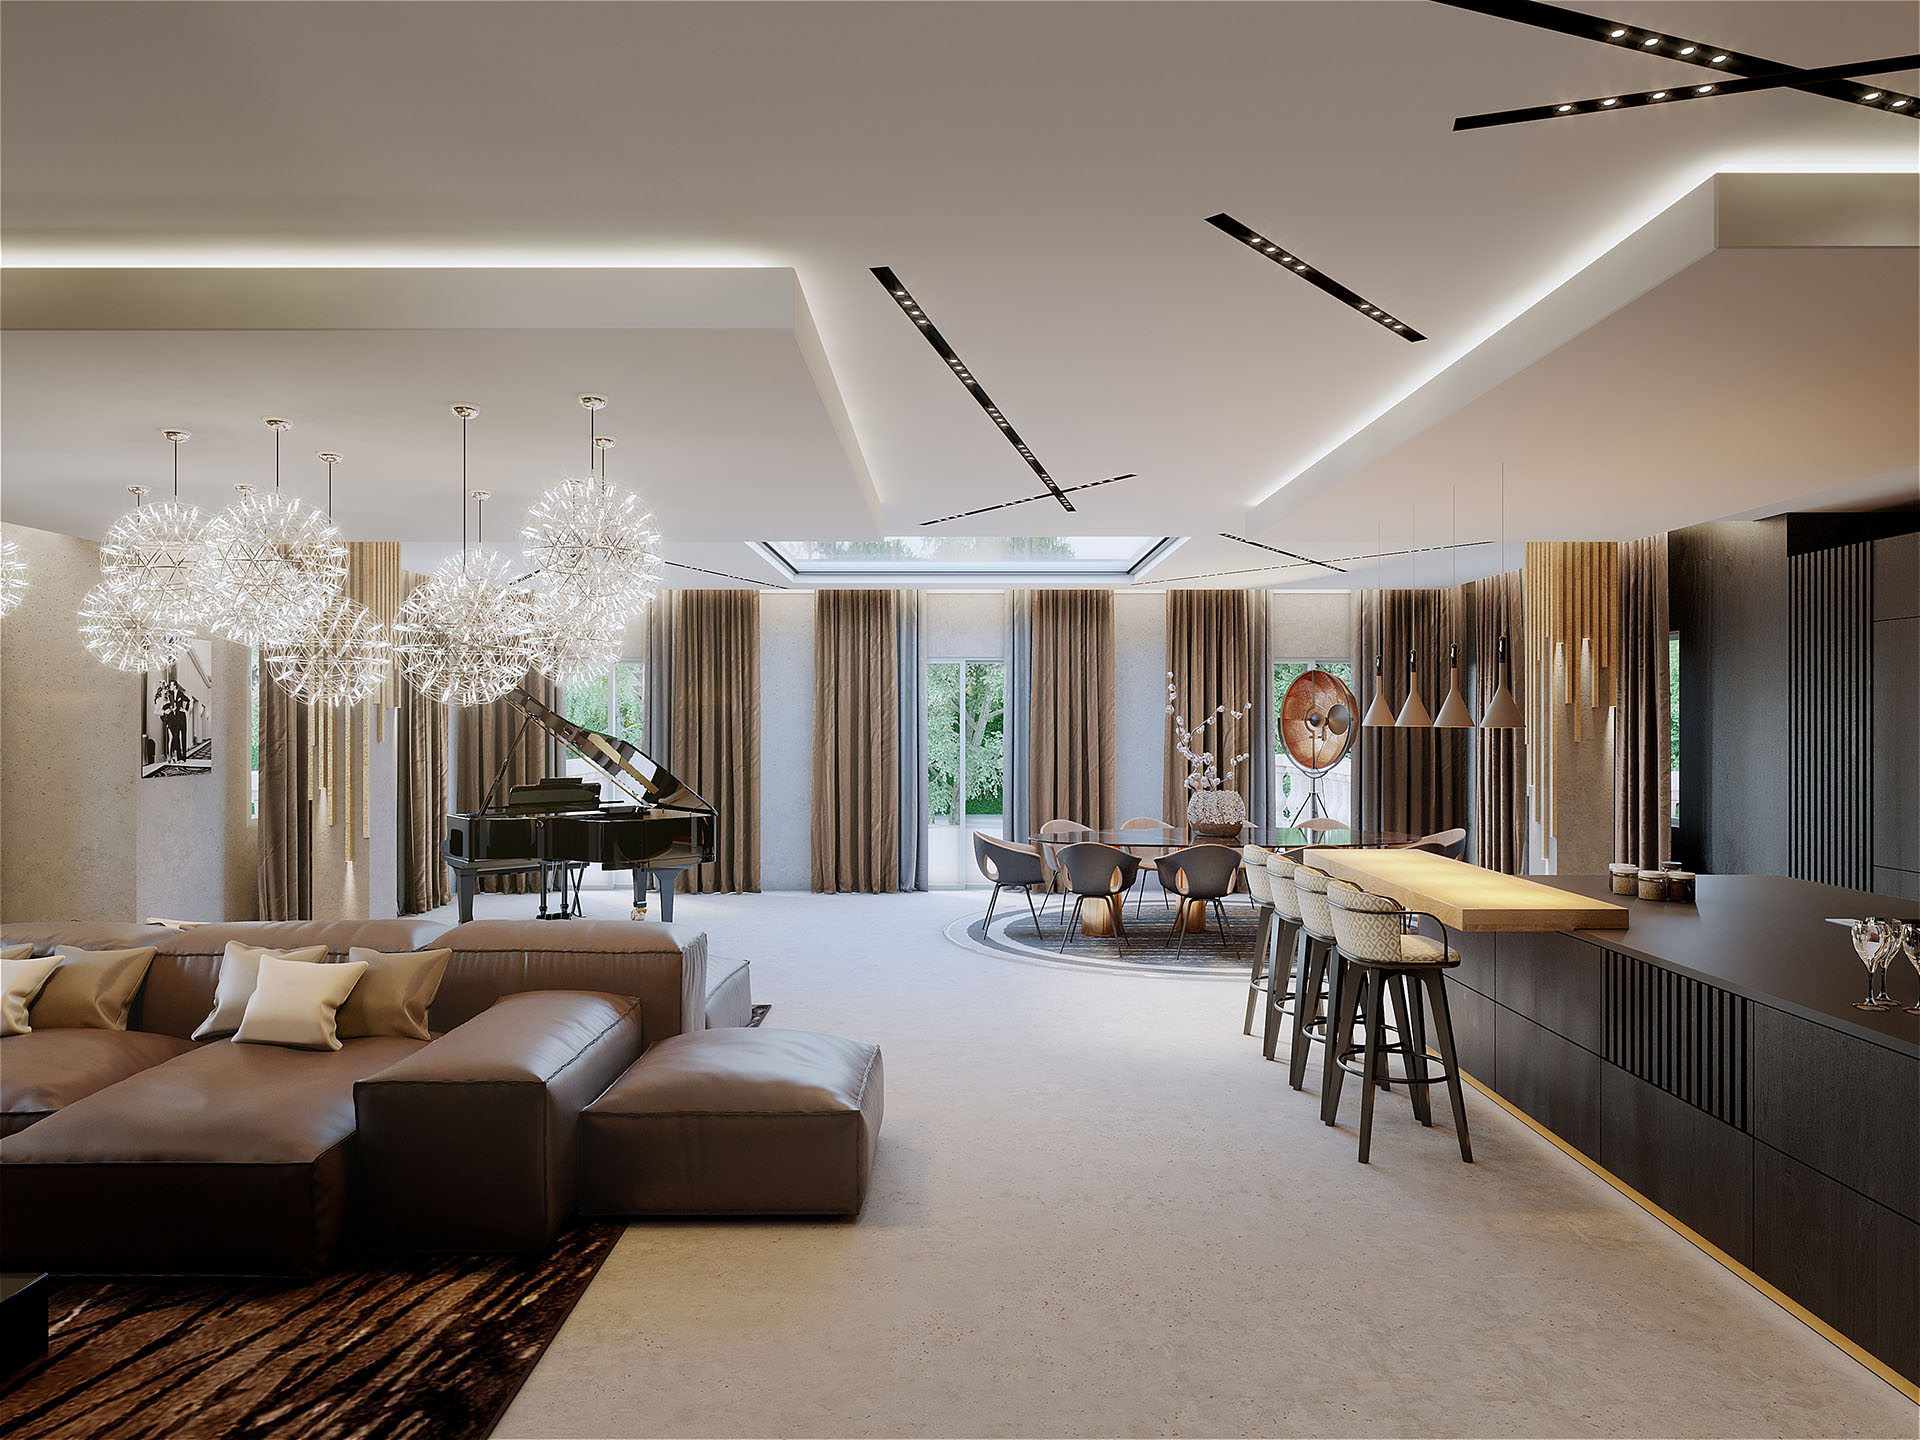 Image photo-réaliste 3D de la pièce de vie d'une villa de luxe